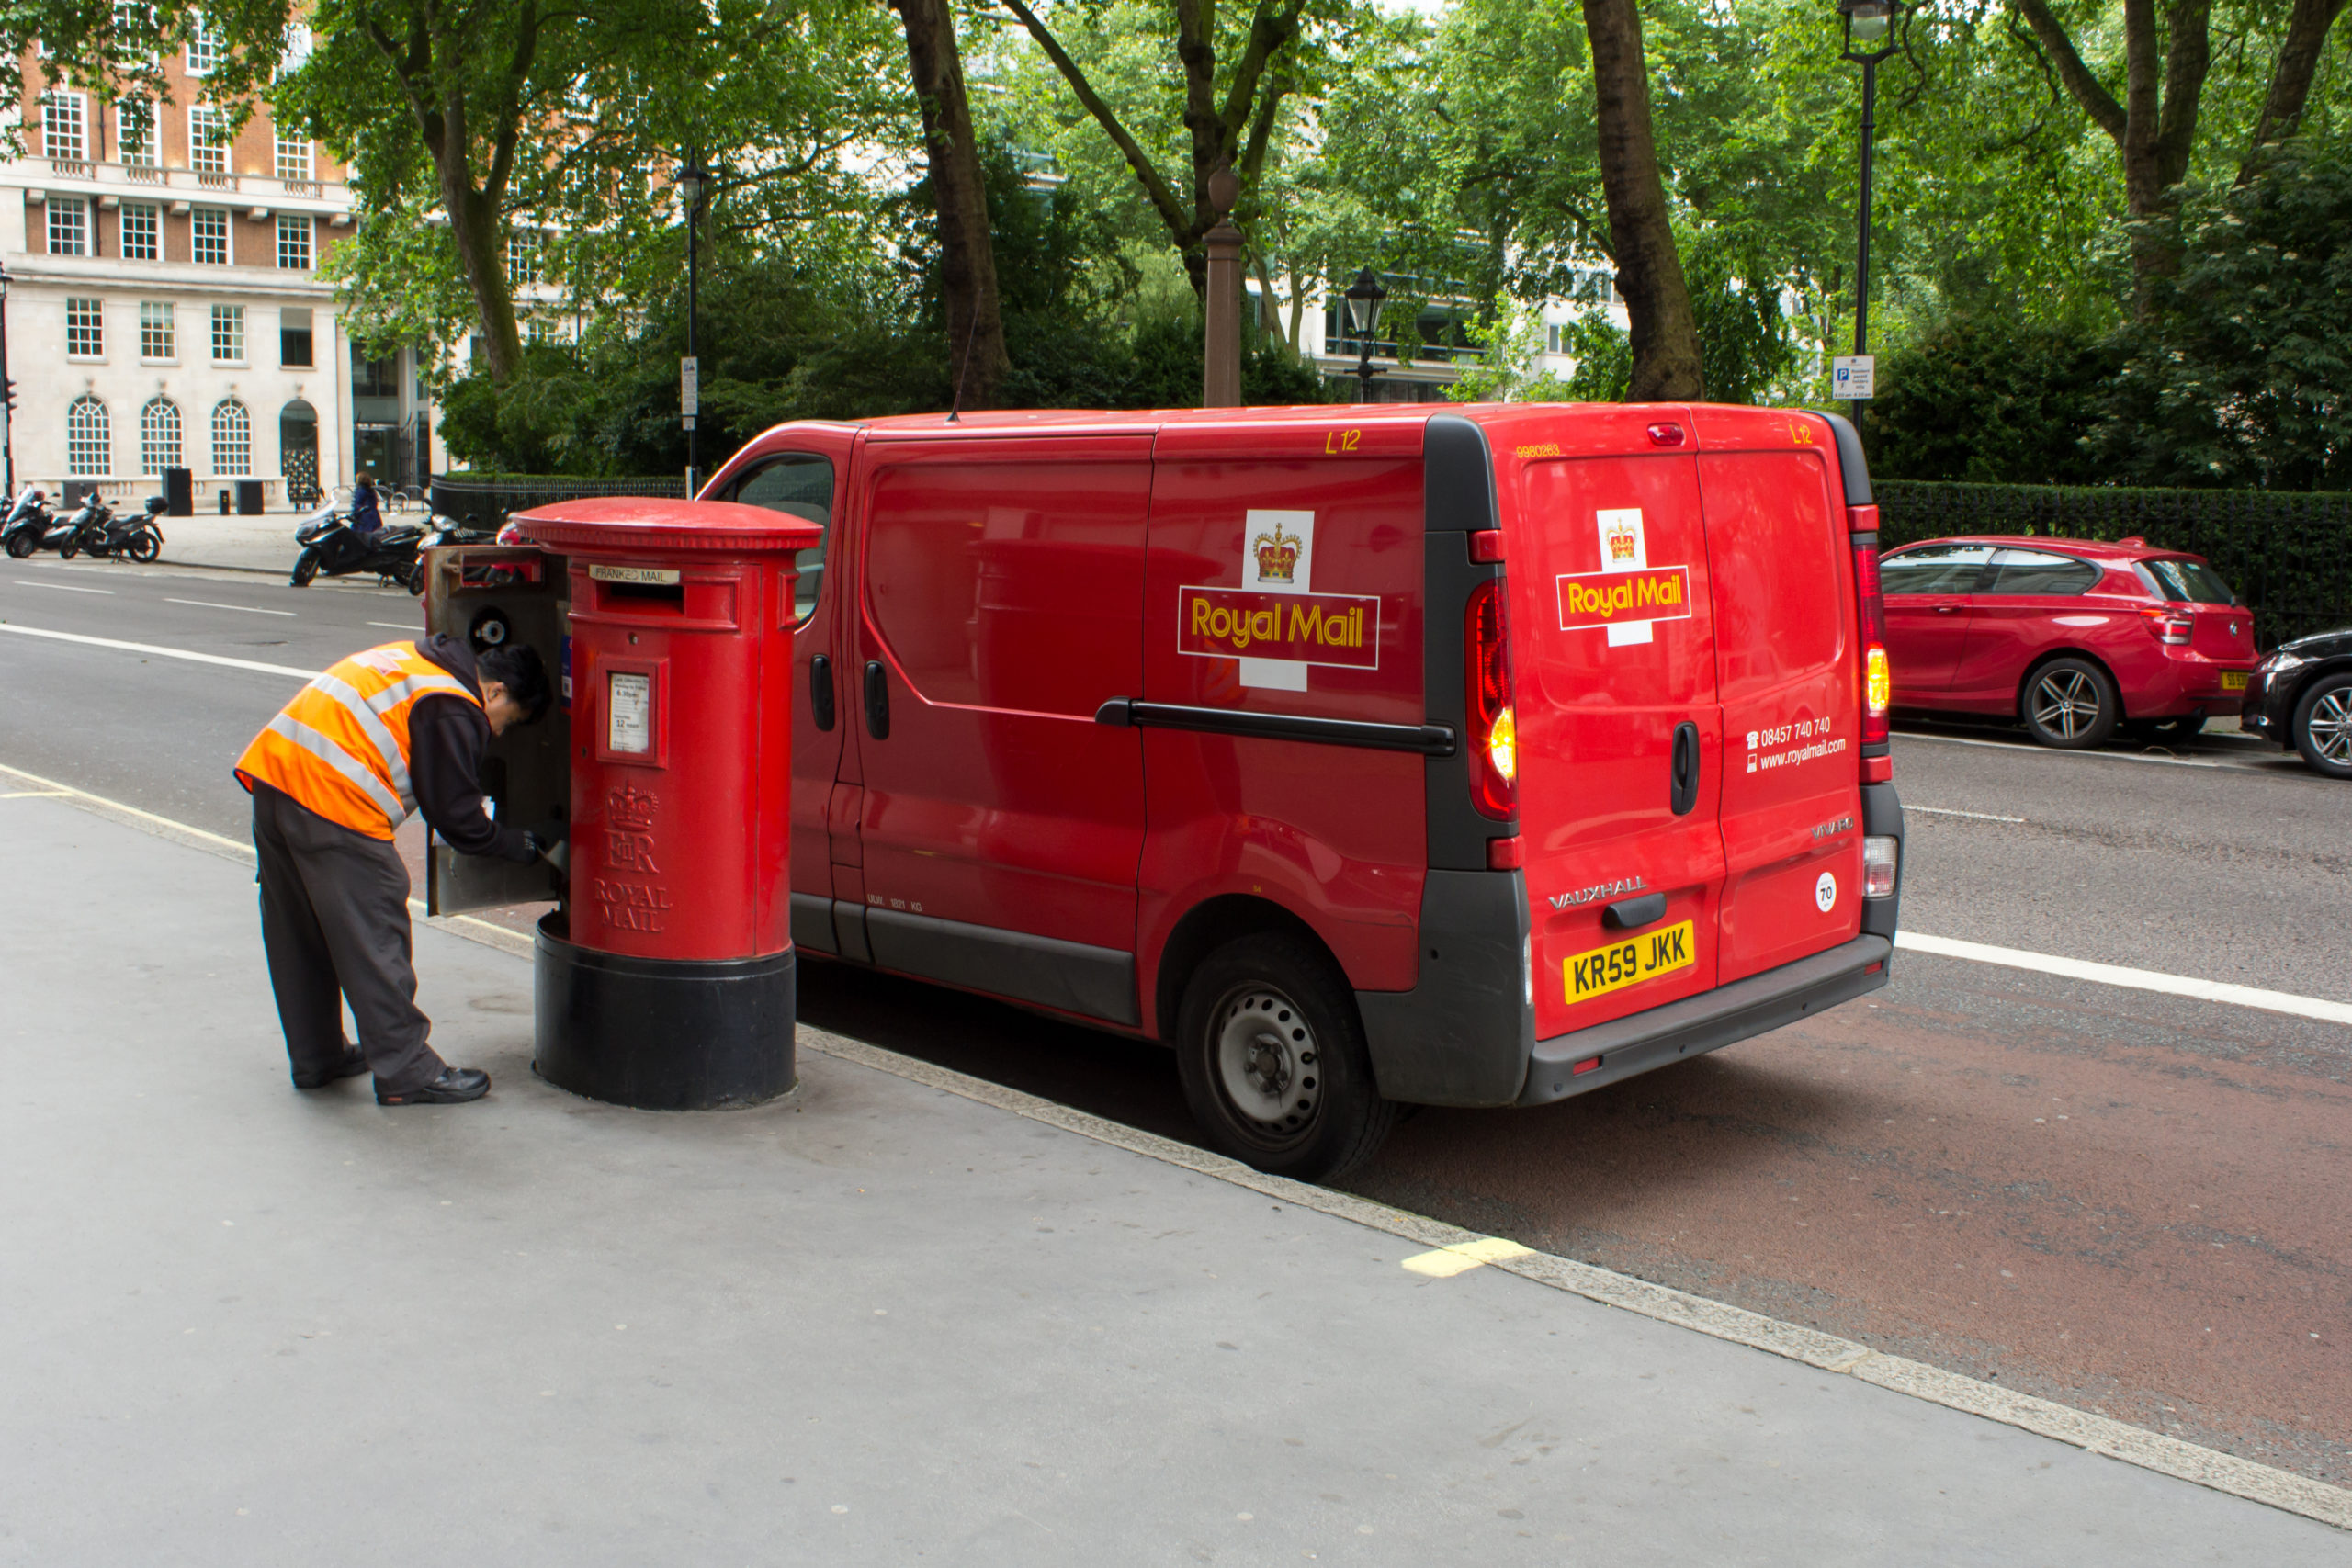 Britská pošta Royal Mail plánuje do srpna propustit až 6 000 ze 140 000 lidí